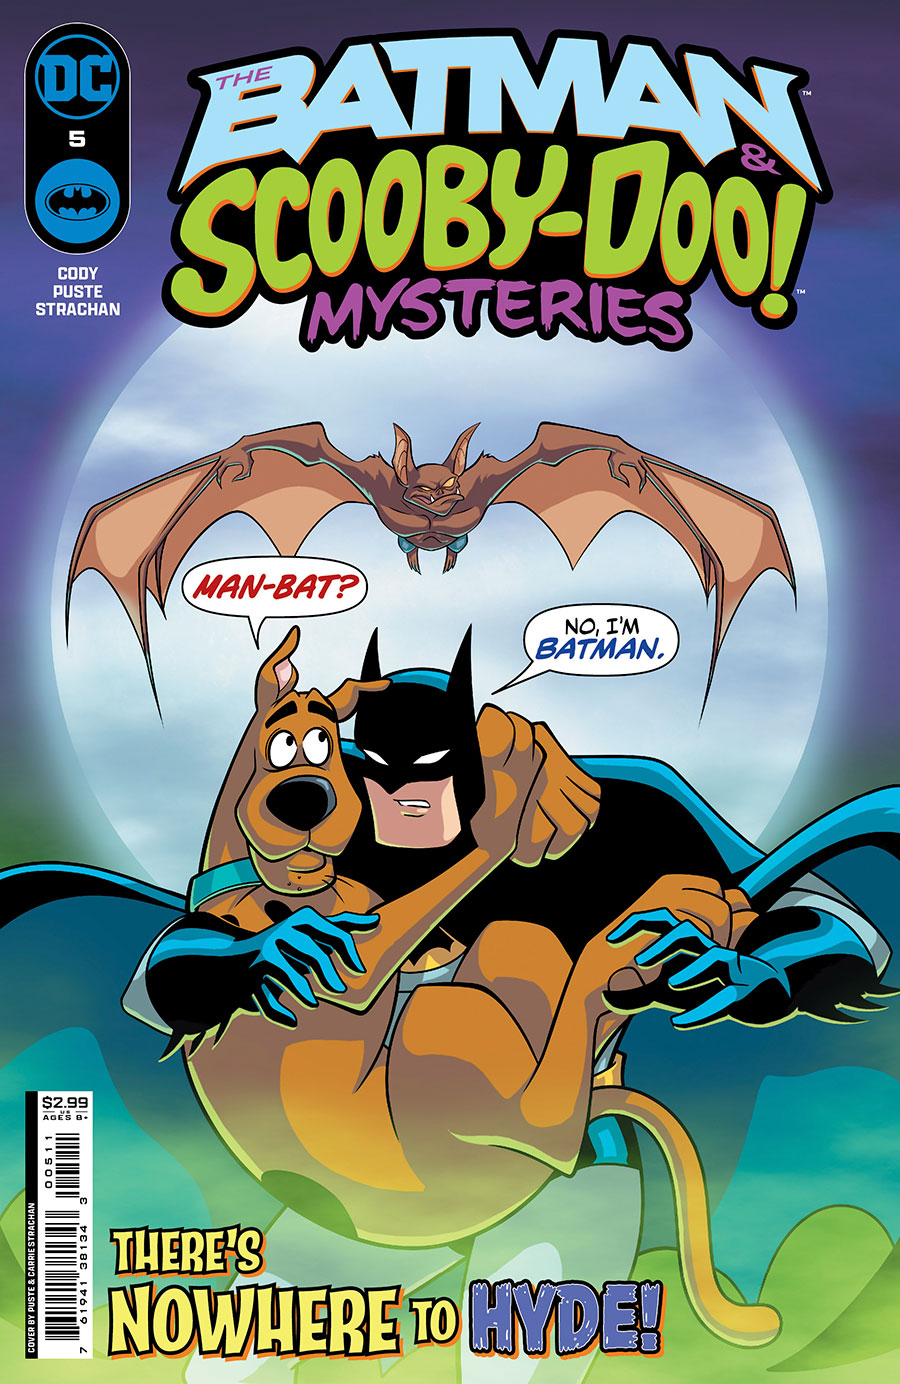 Batman & Scooby-Doo Mysteries Vol 3 #5